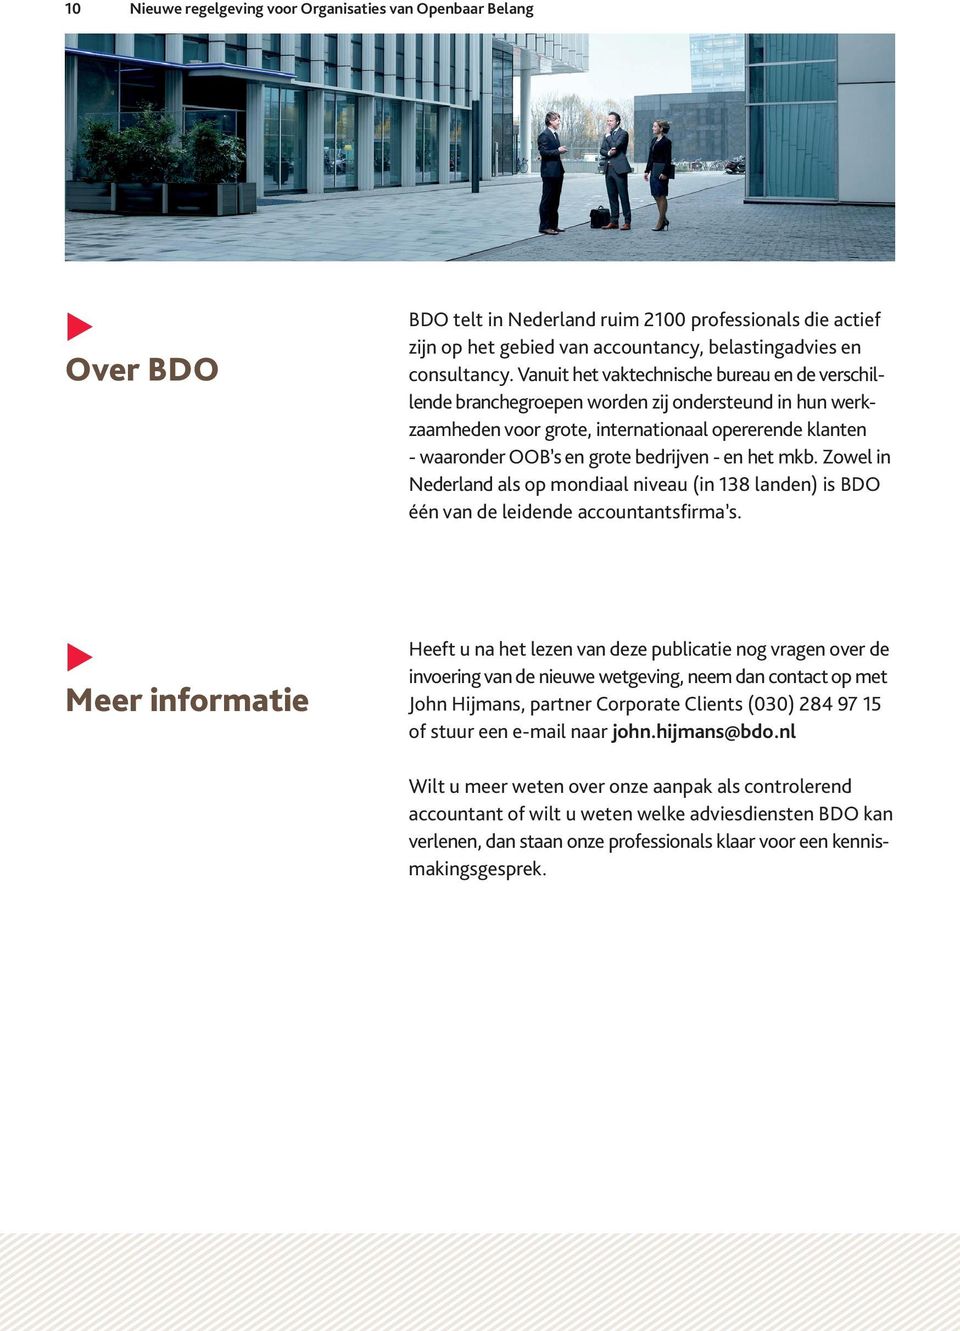 het mkb. Zowel in Nederland als op mondiaal niveau (in 138 landen) is BDO één van de leidende accountantsfirma s.